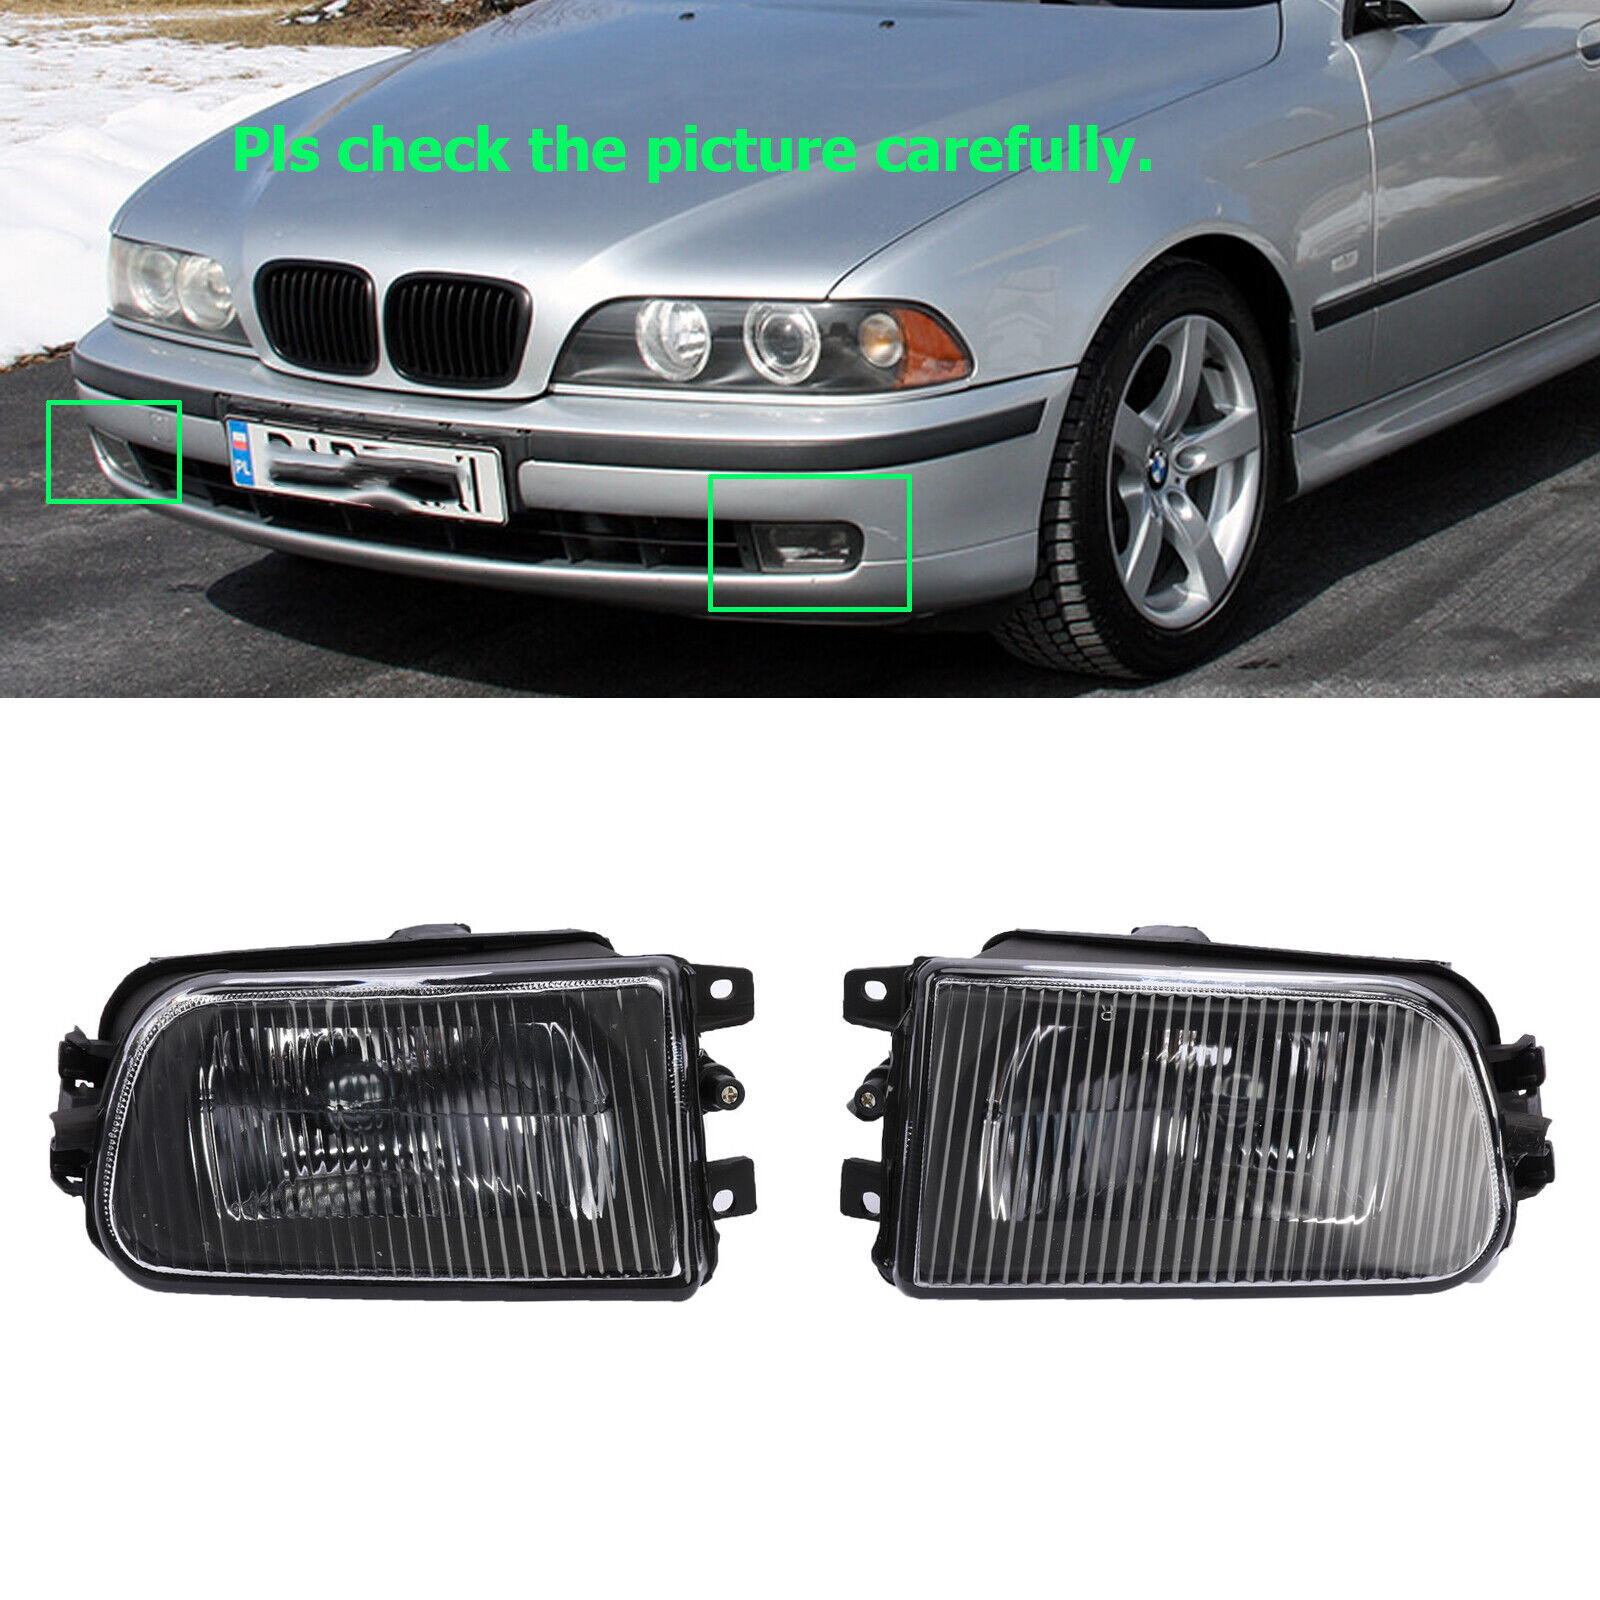 Front Bumper Fog Light For BMW E39 528i 540i Z3 Pair Driving Lamp Housing